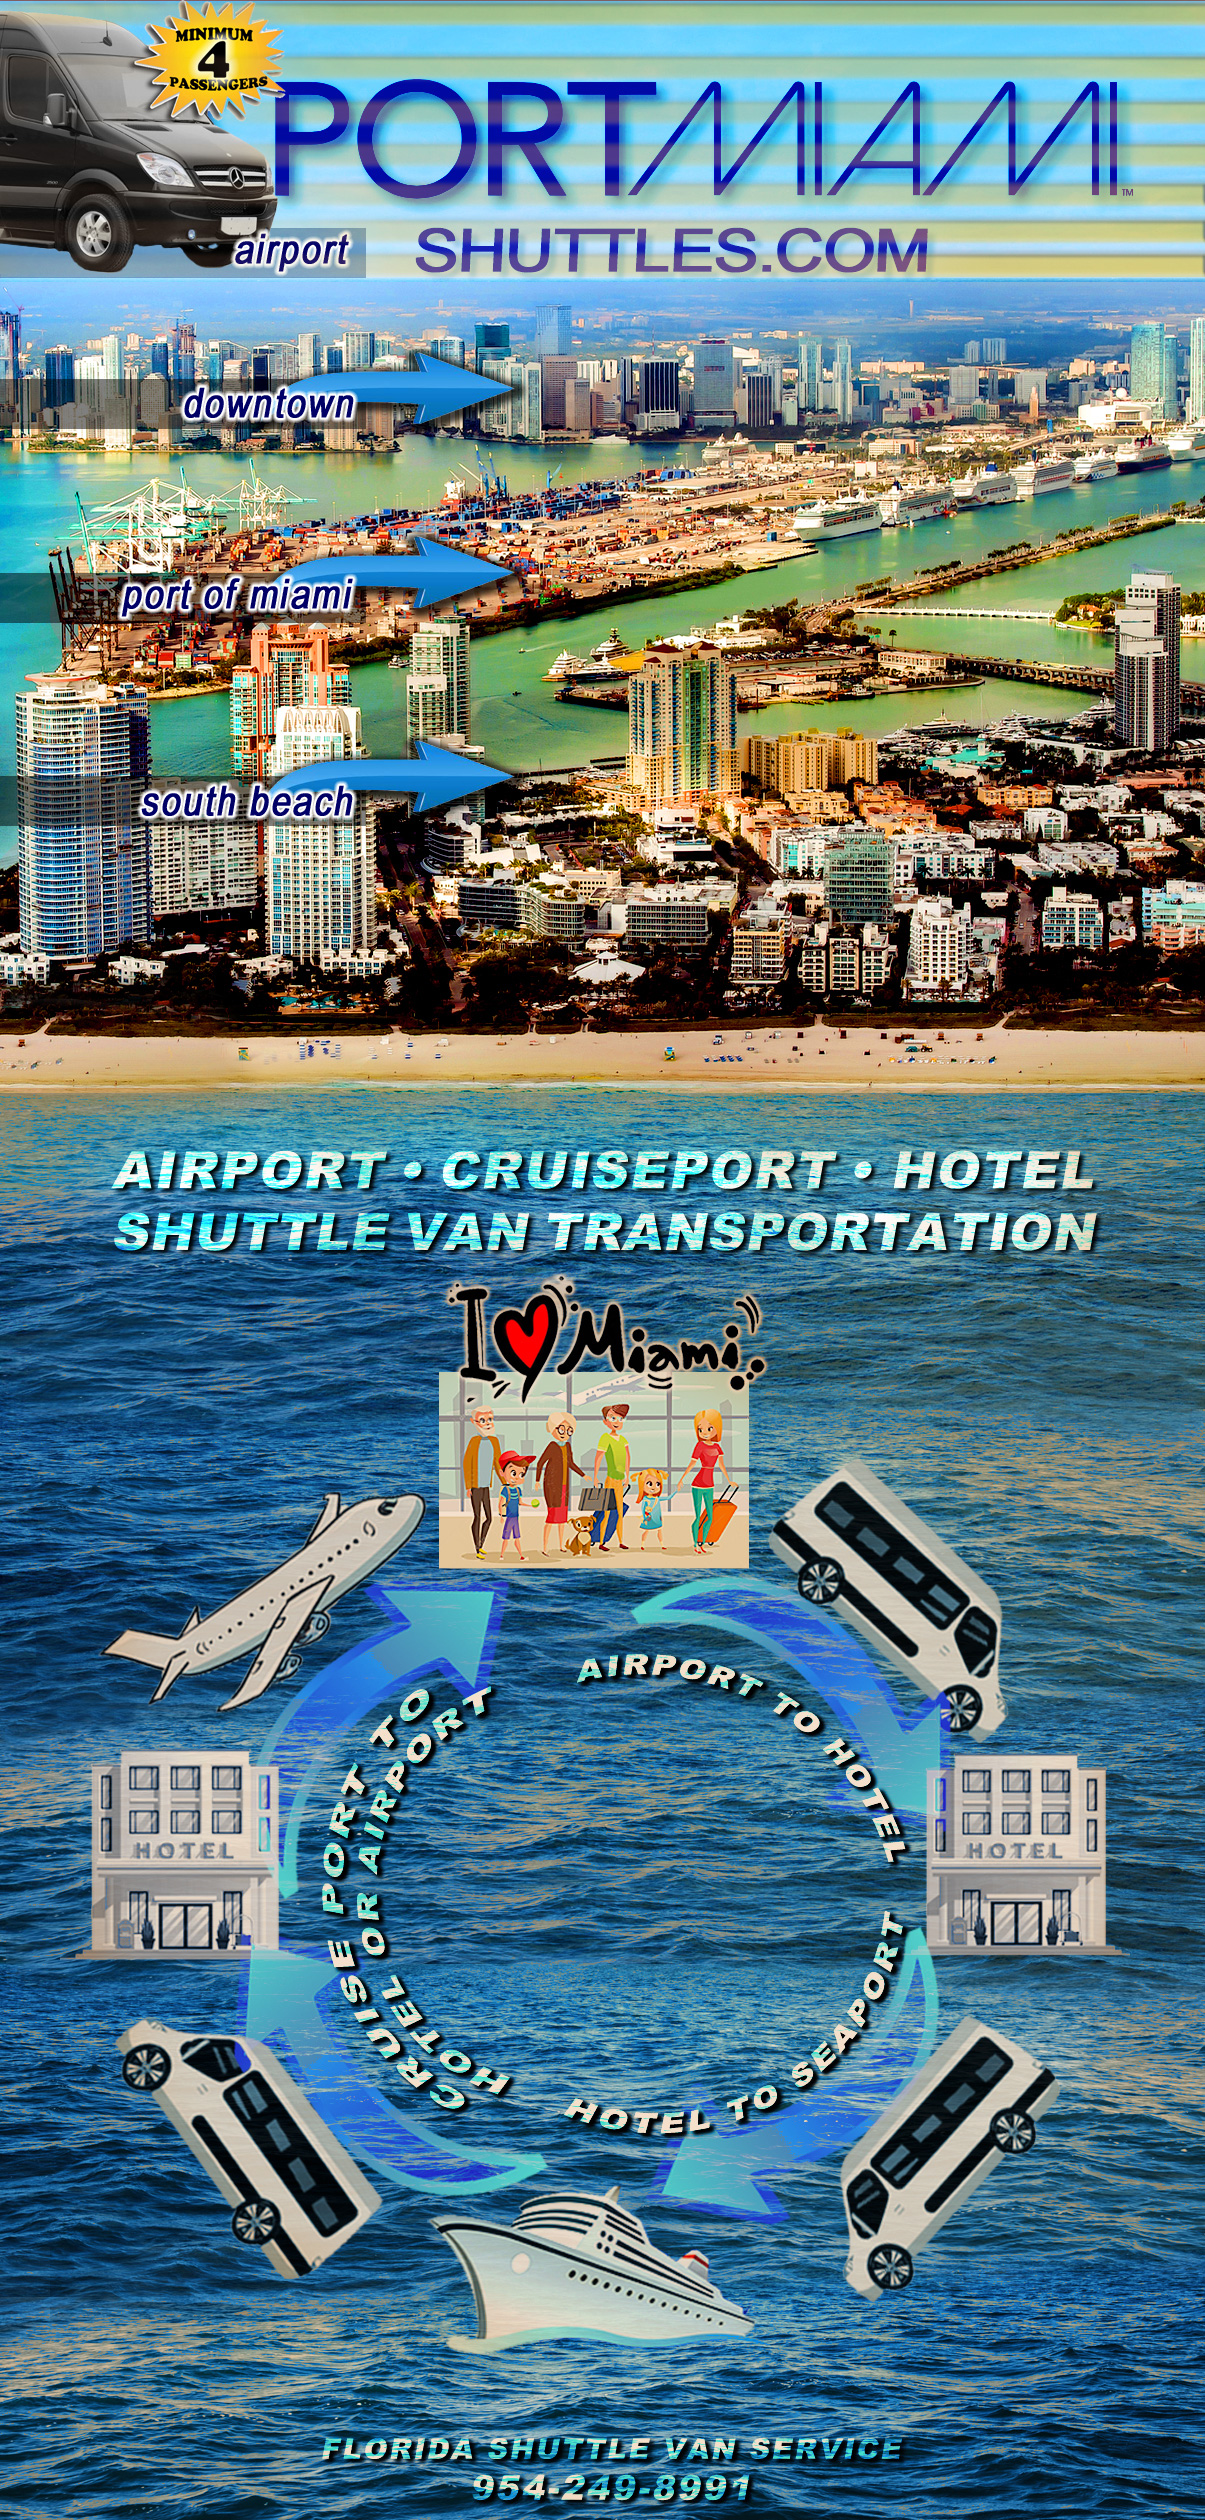 Port of Miami Shuttle Service